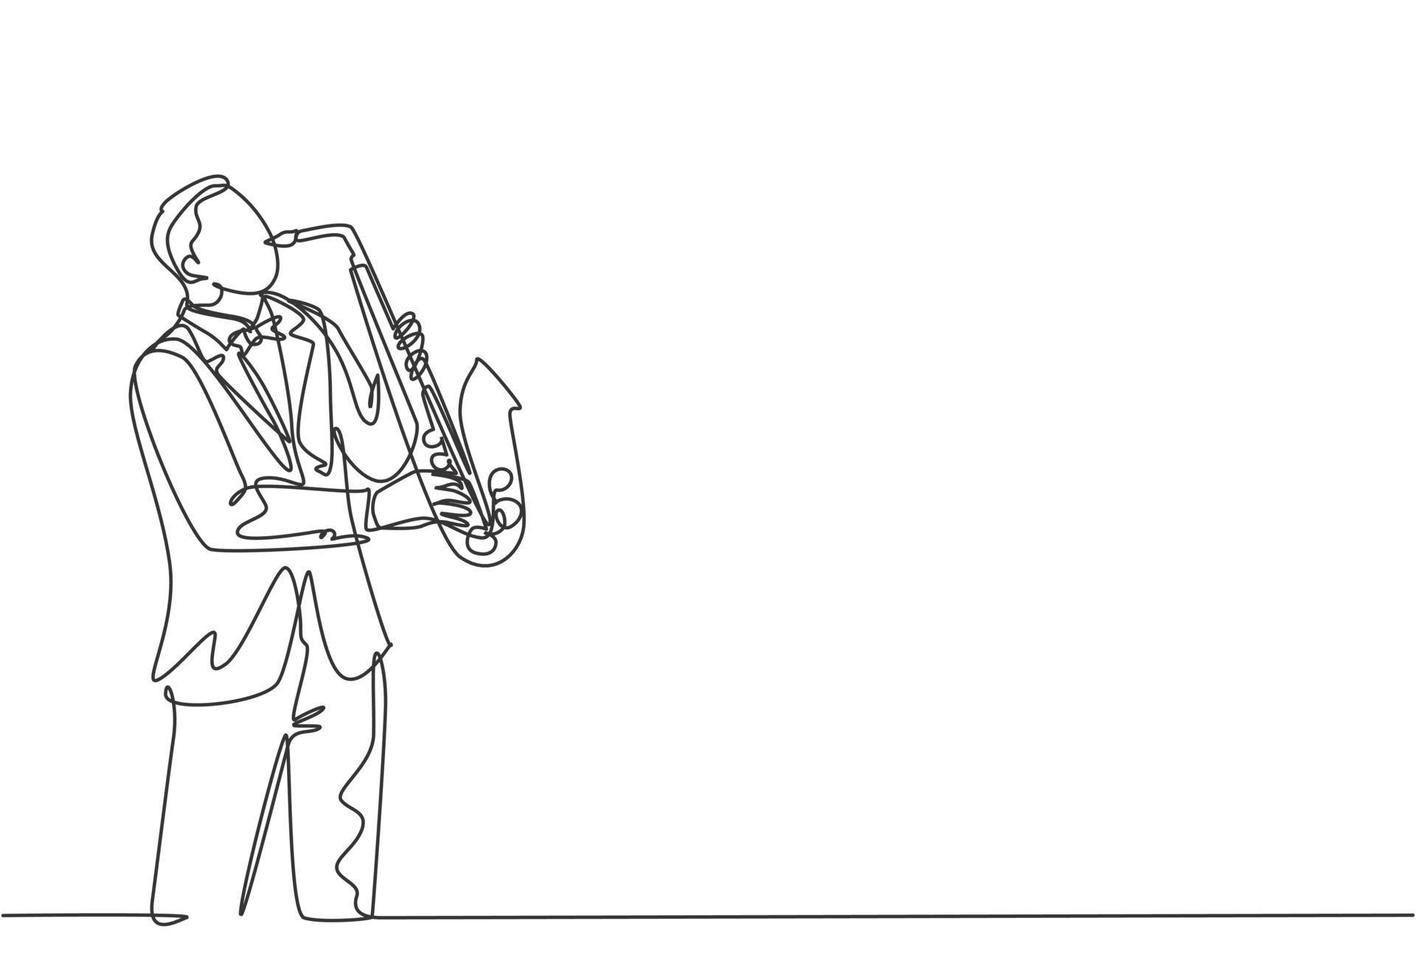 dessin au trait continu unique d'un jeune saxophoniste masculin heureux avec un chapeau jouant pour jouer du saxophone lors d'un concert de musique. Concept de performance de l'artiste musicien une ligne dessiner illustration vectorielle de conception vecteur